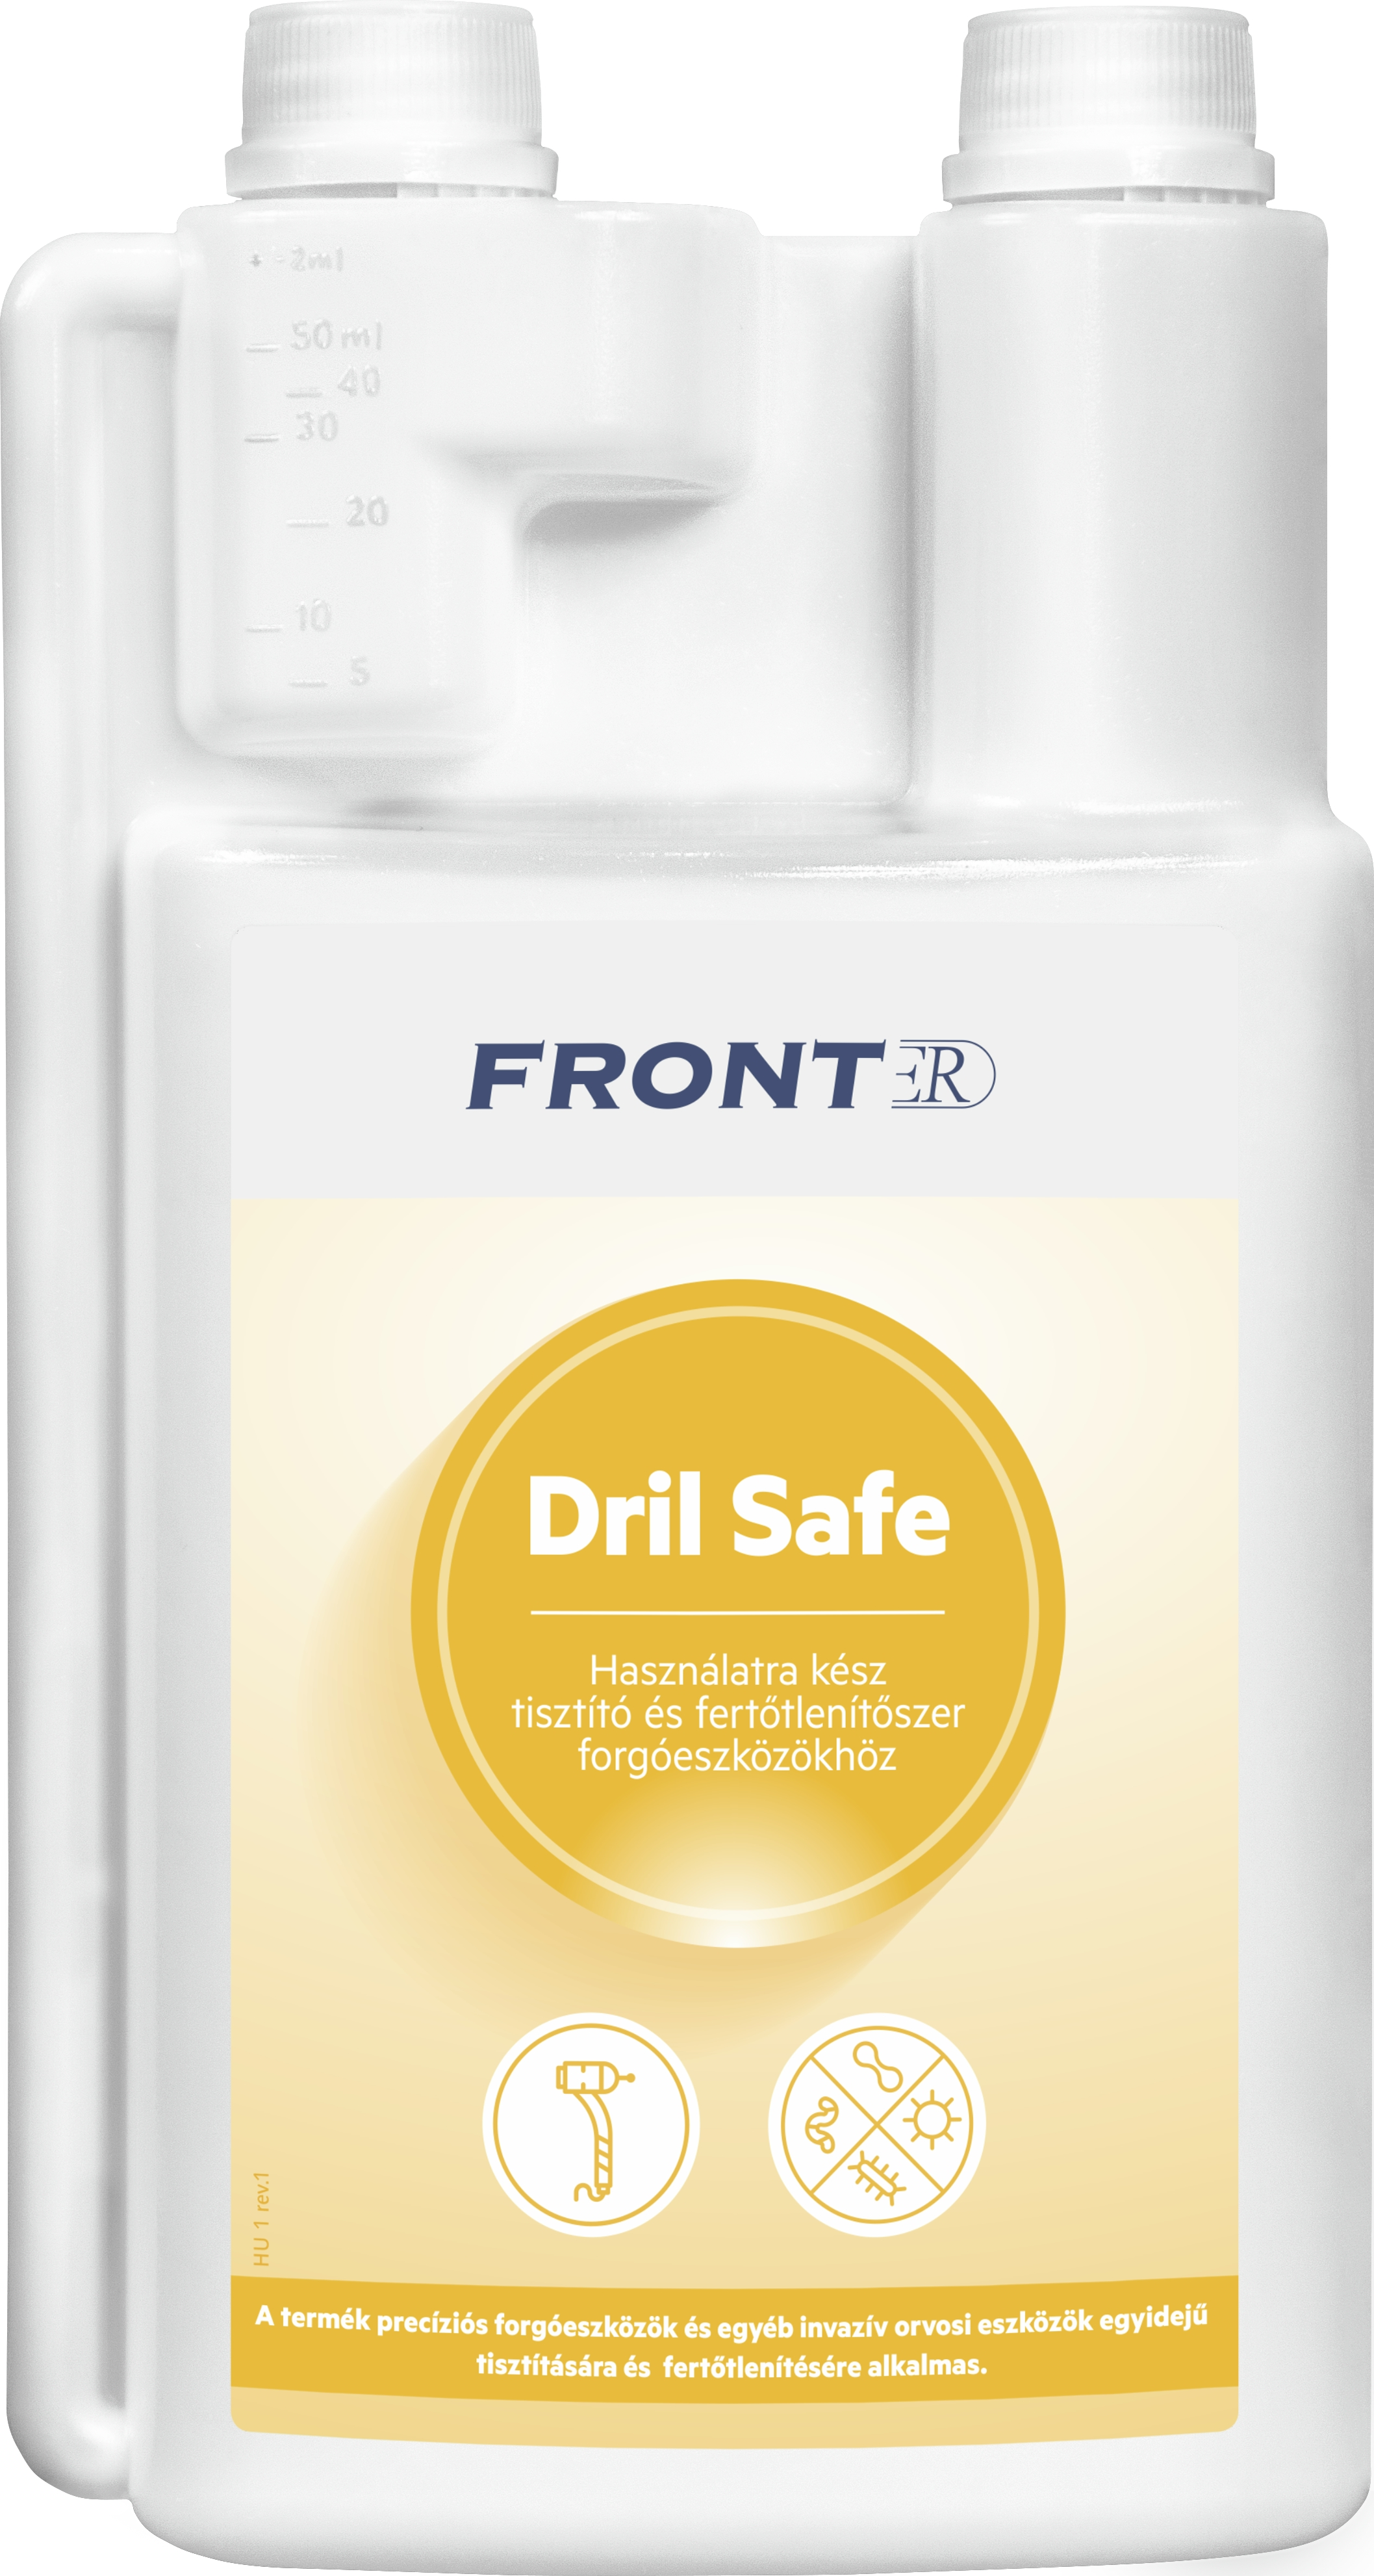 FrontER DrilSafe 1l fogászati fúrófertőtlenítő